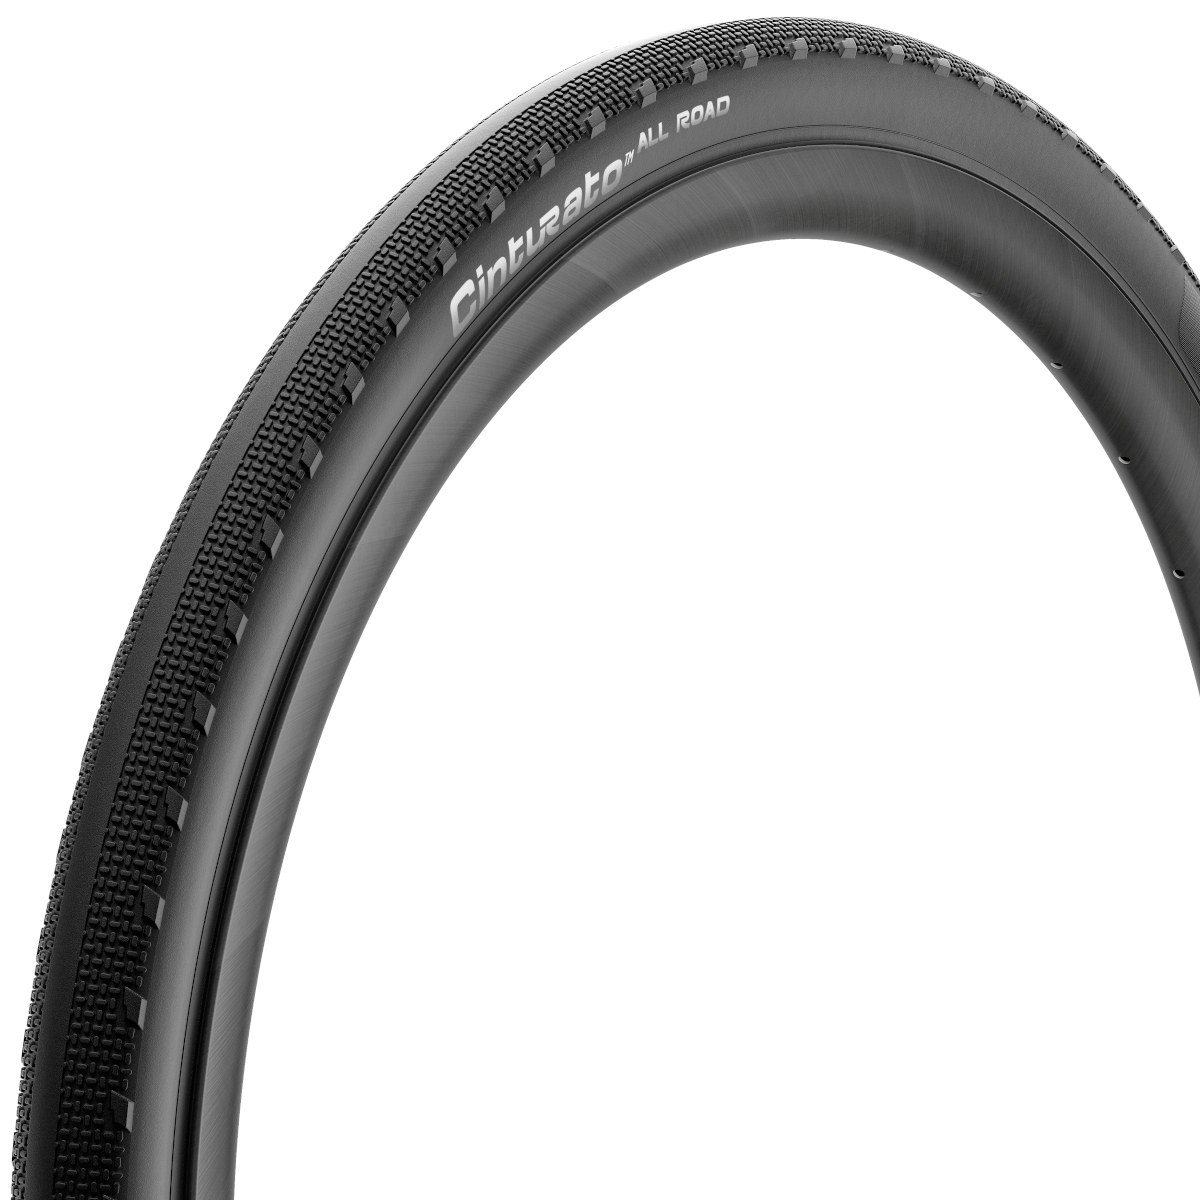 Productfoto van Pirelli Cinturato All Road Vouwband - 40-622 | zwart